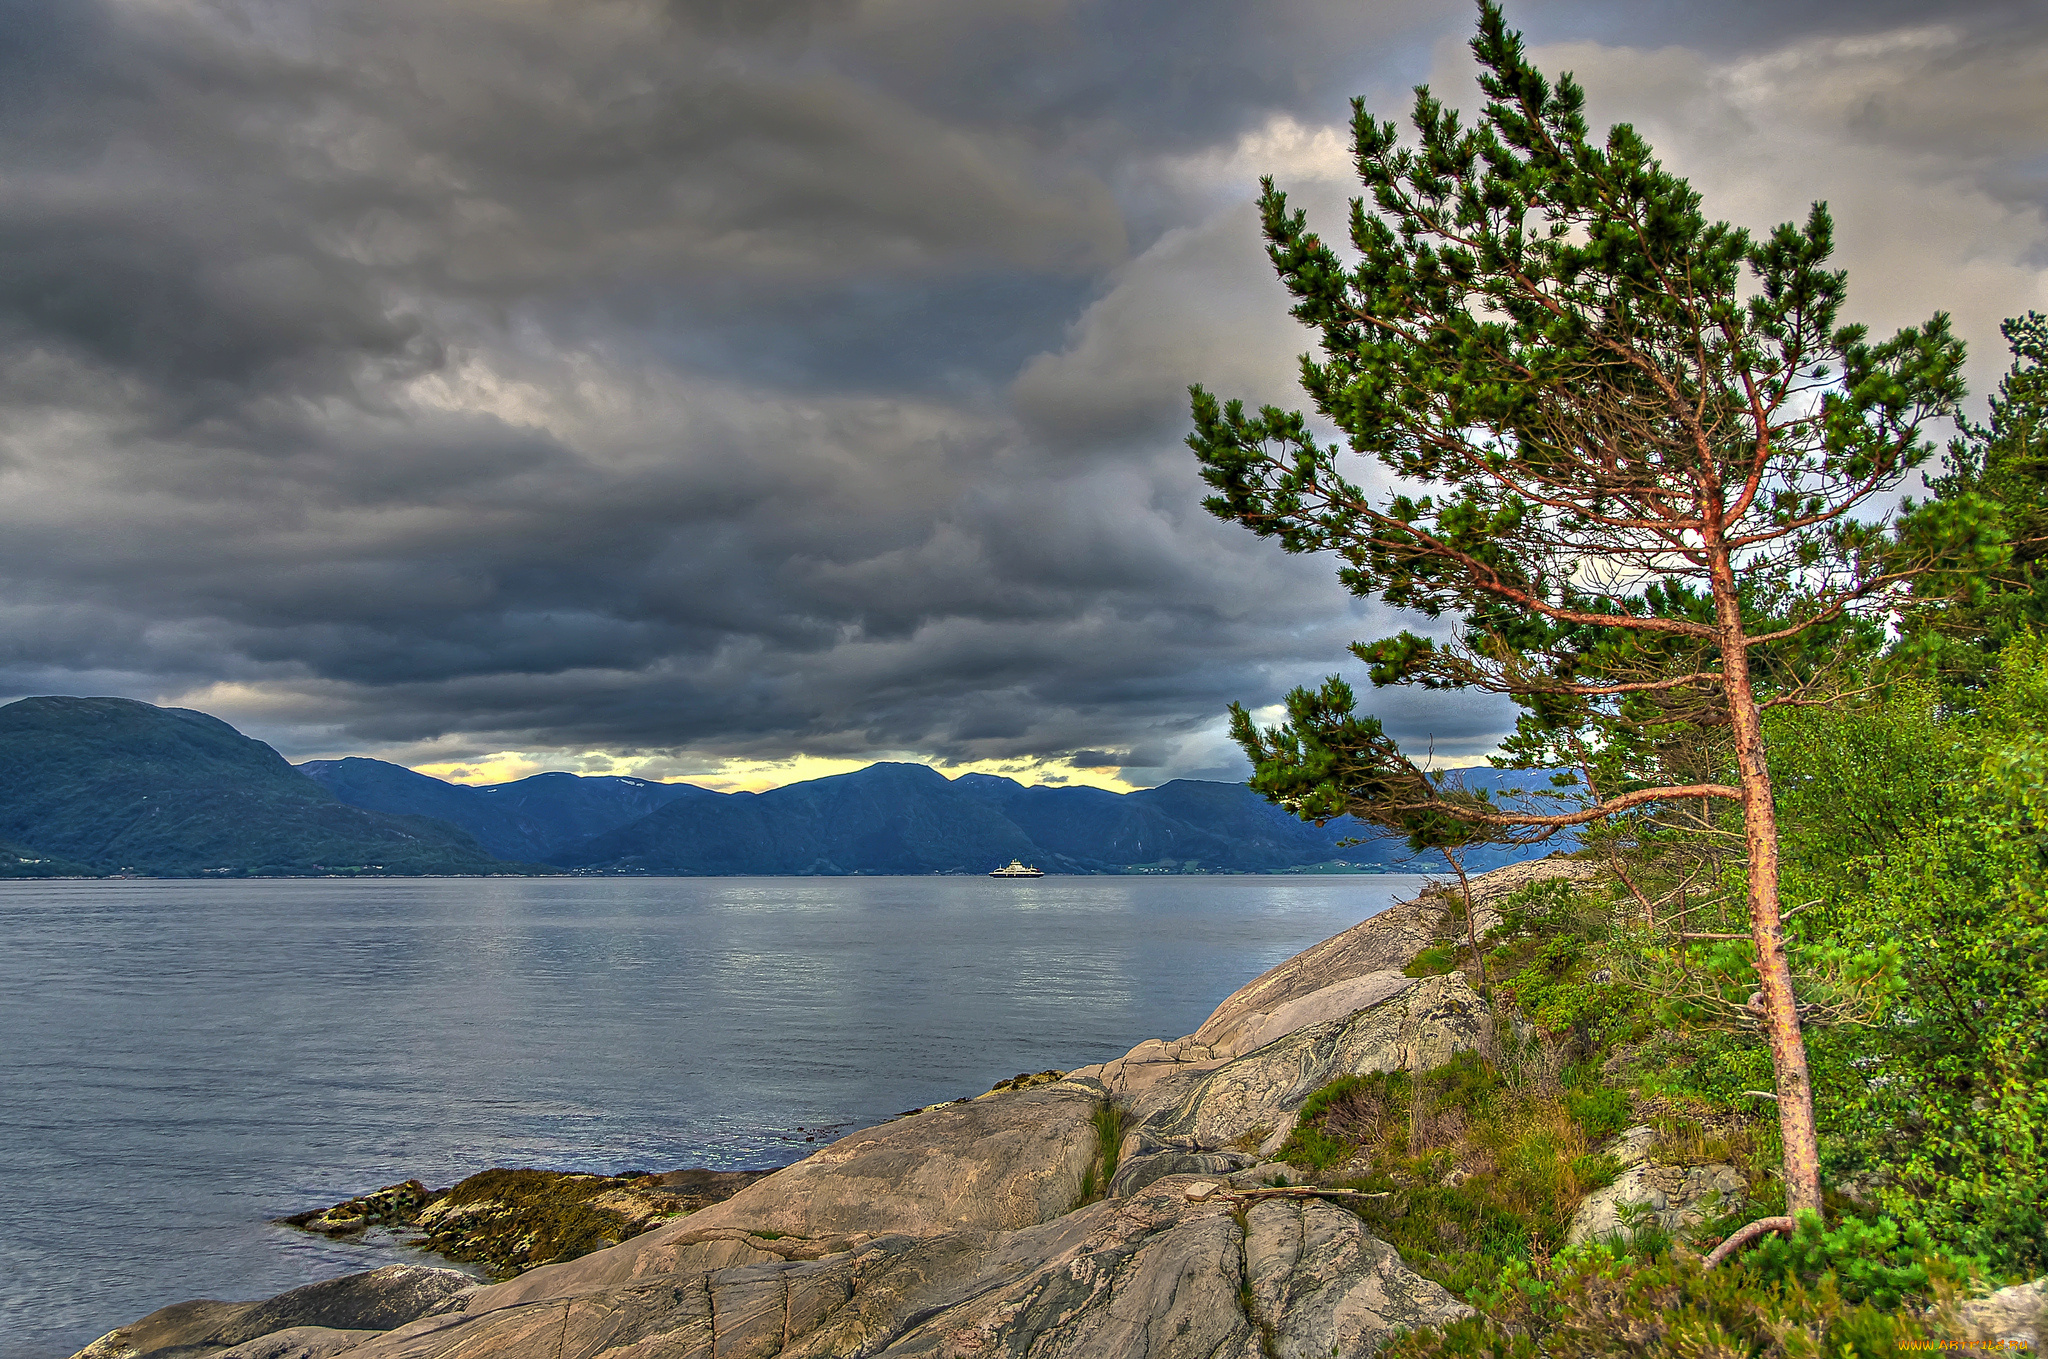 sognefjord, norway, природа, побережье, согне-фьорд, норвегия, дерево, сосна, горы, облака